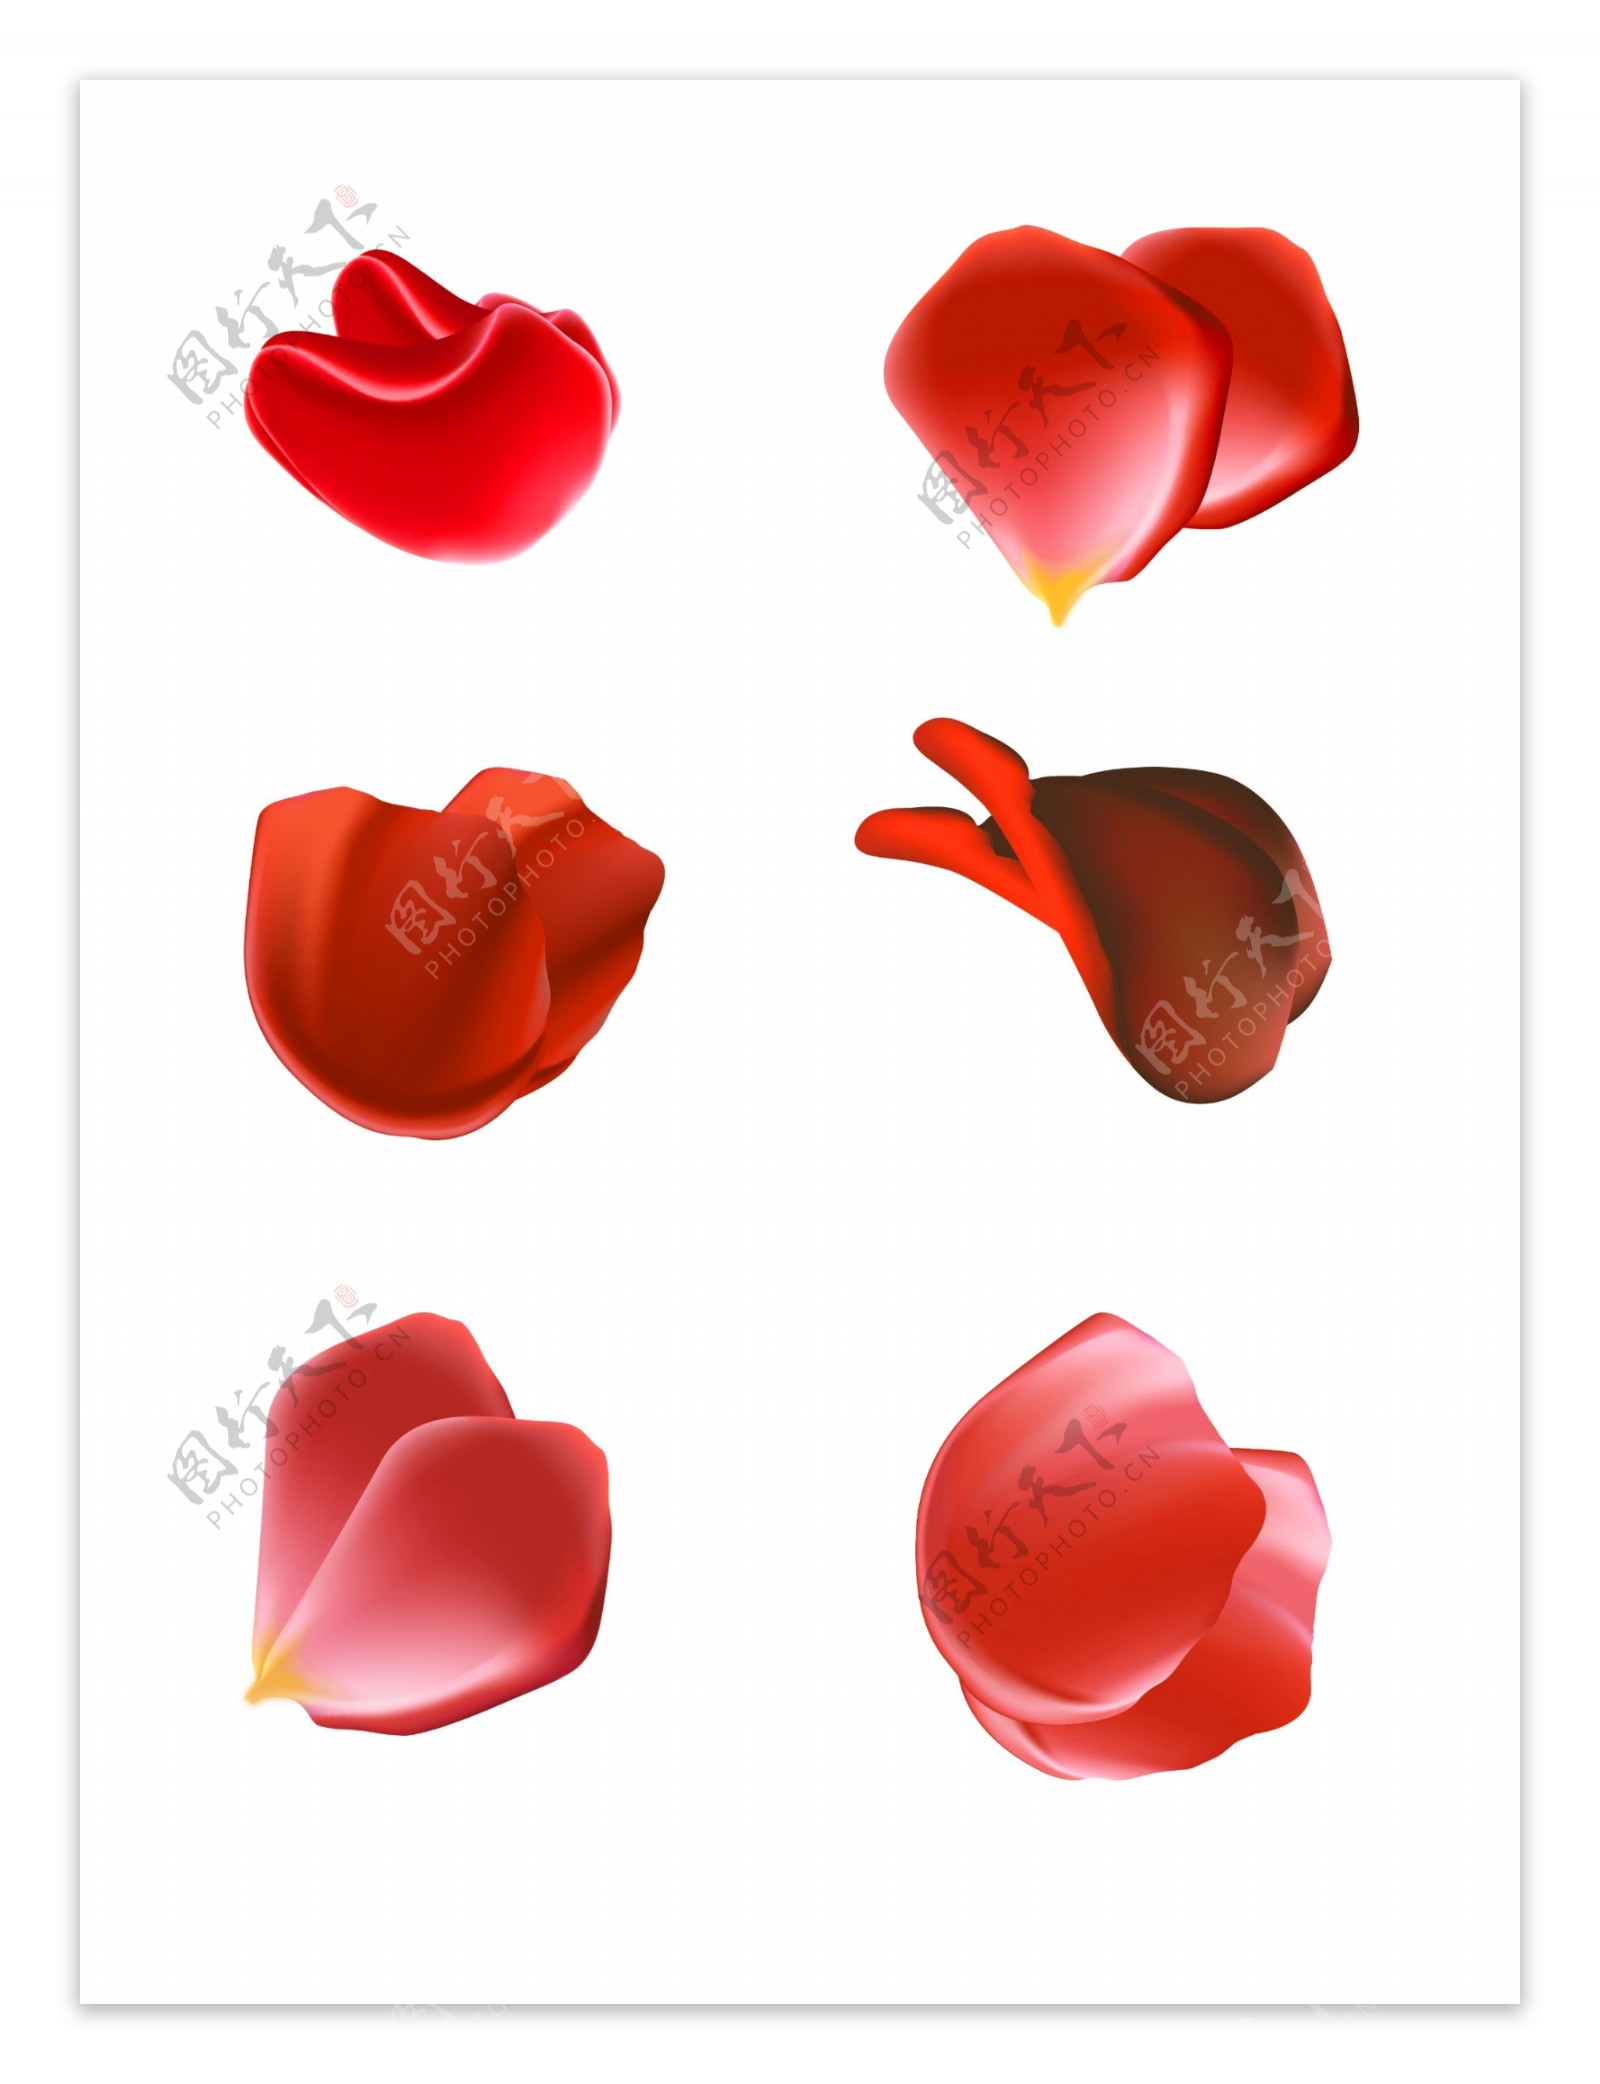 花瓣红色玫瑰花装饰元素设计